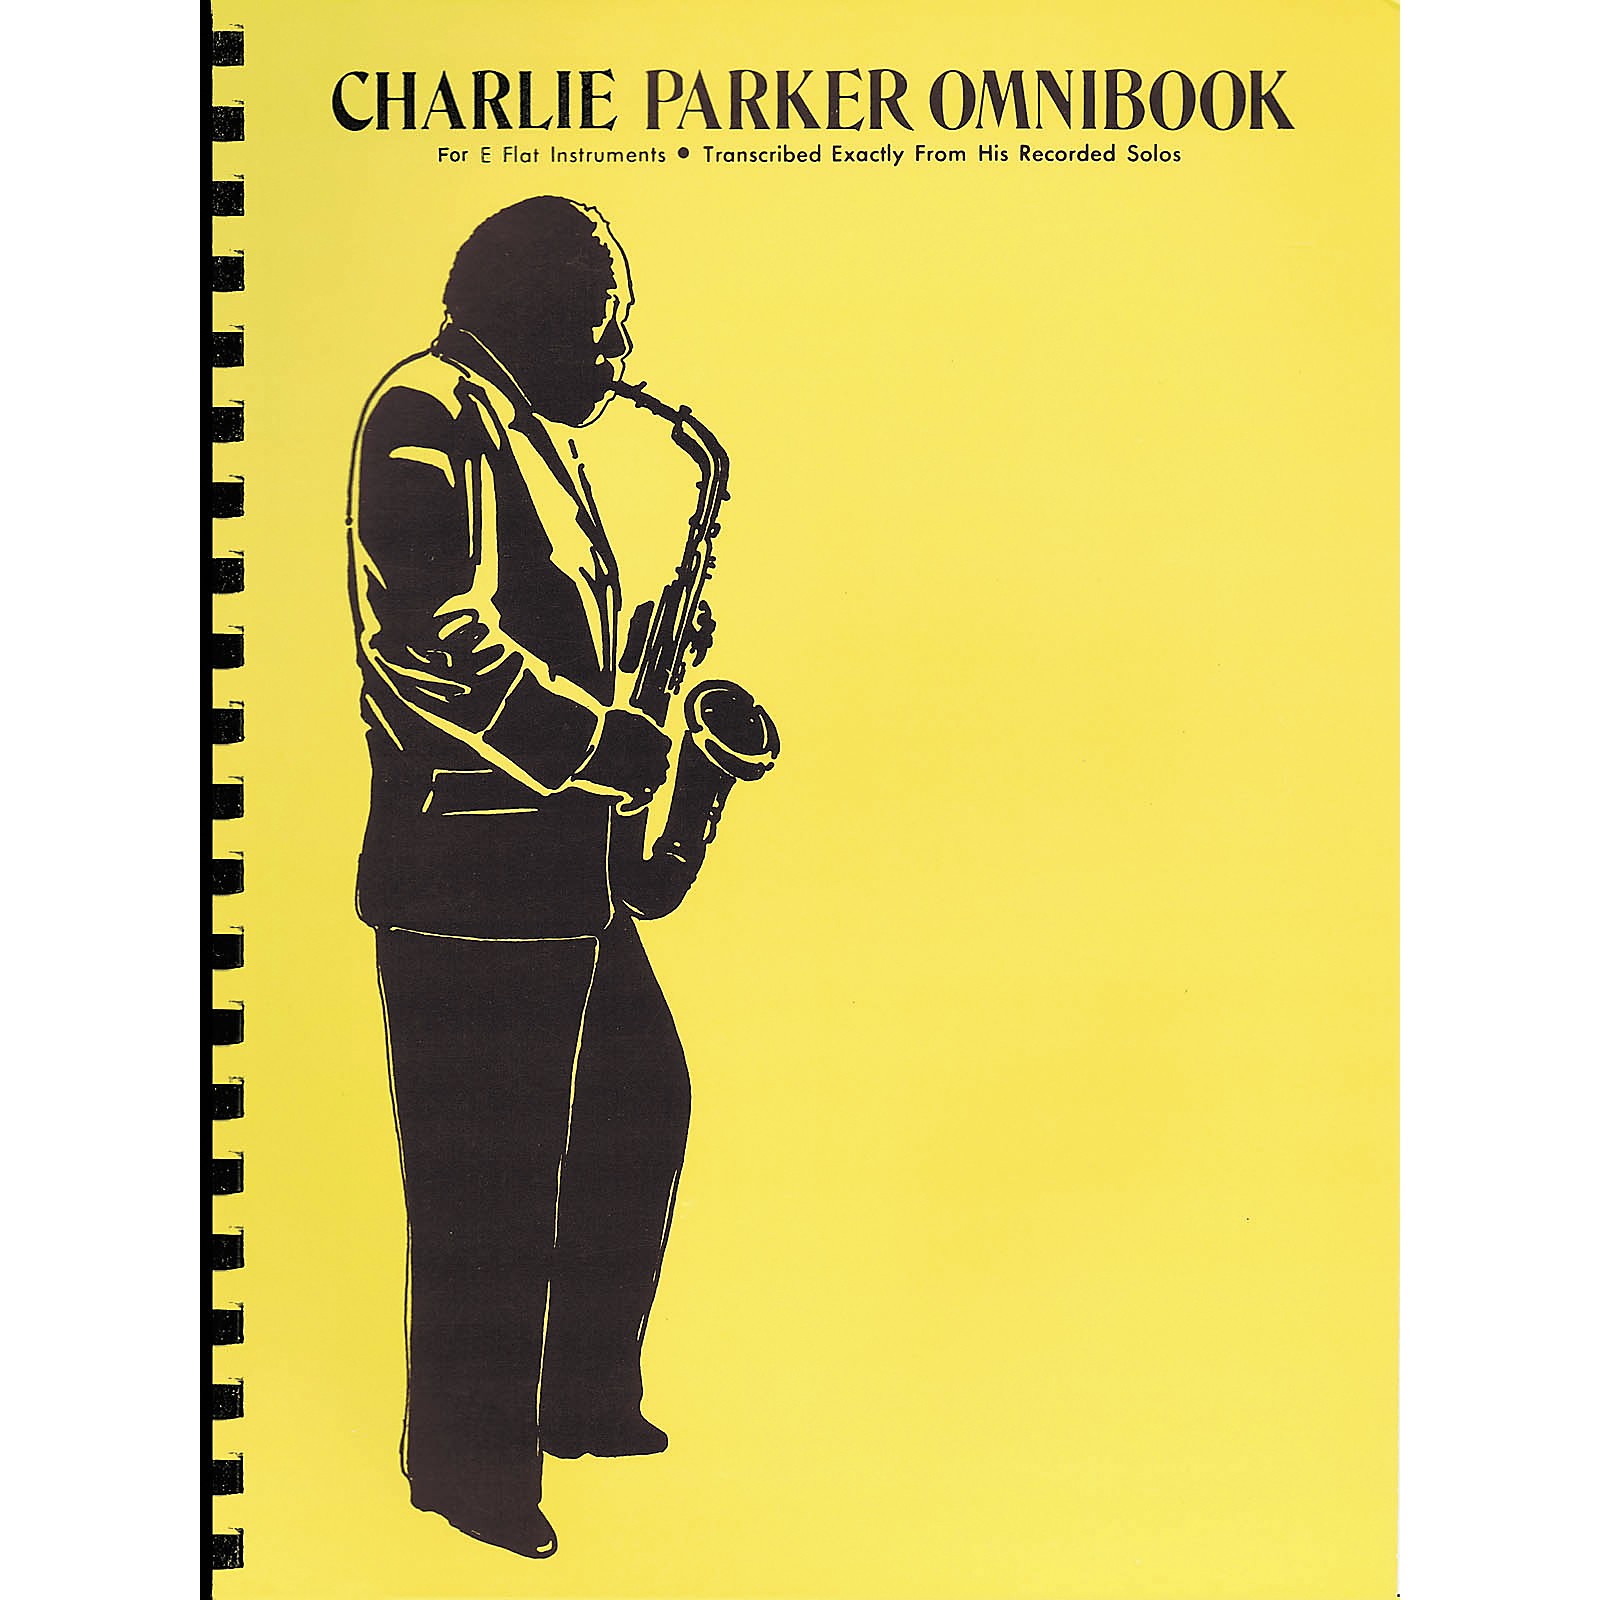 The Reader's Notebook: Charlie Parker